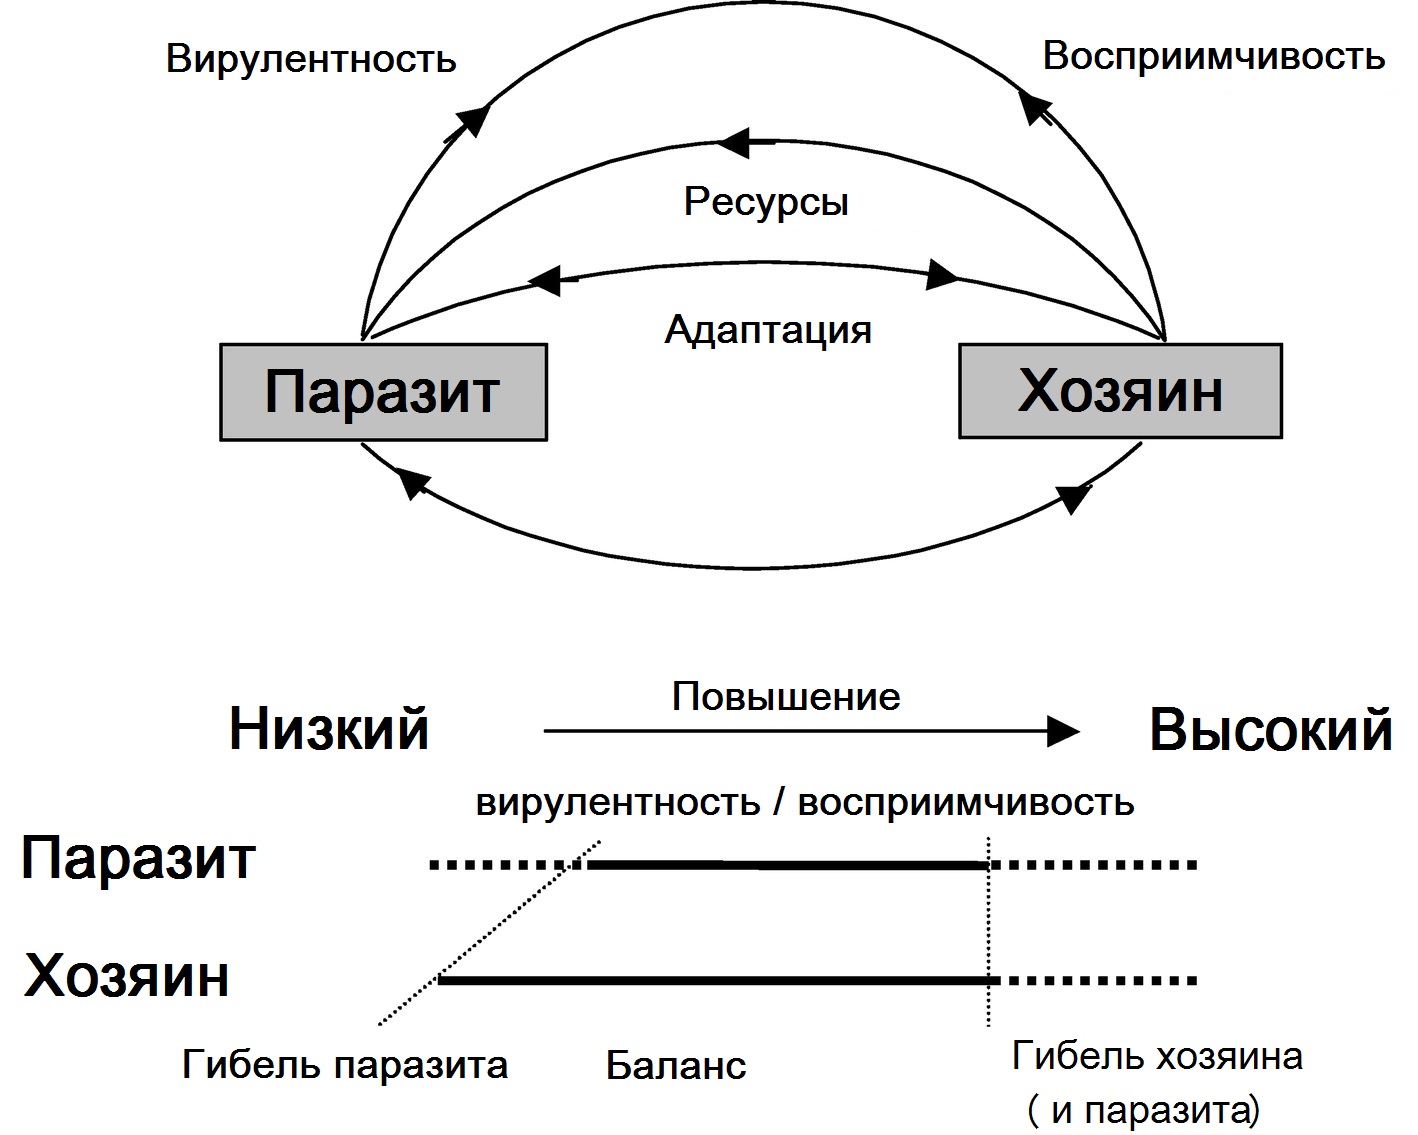 Схема взаимодействия паразита и хозяина. На диаграмме показано, как баланс (или толерантность) может возникнуть из-за изменчивости вирулентности паразита и восприимчивости хозяина (McMullan, 2012).